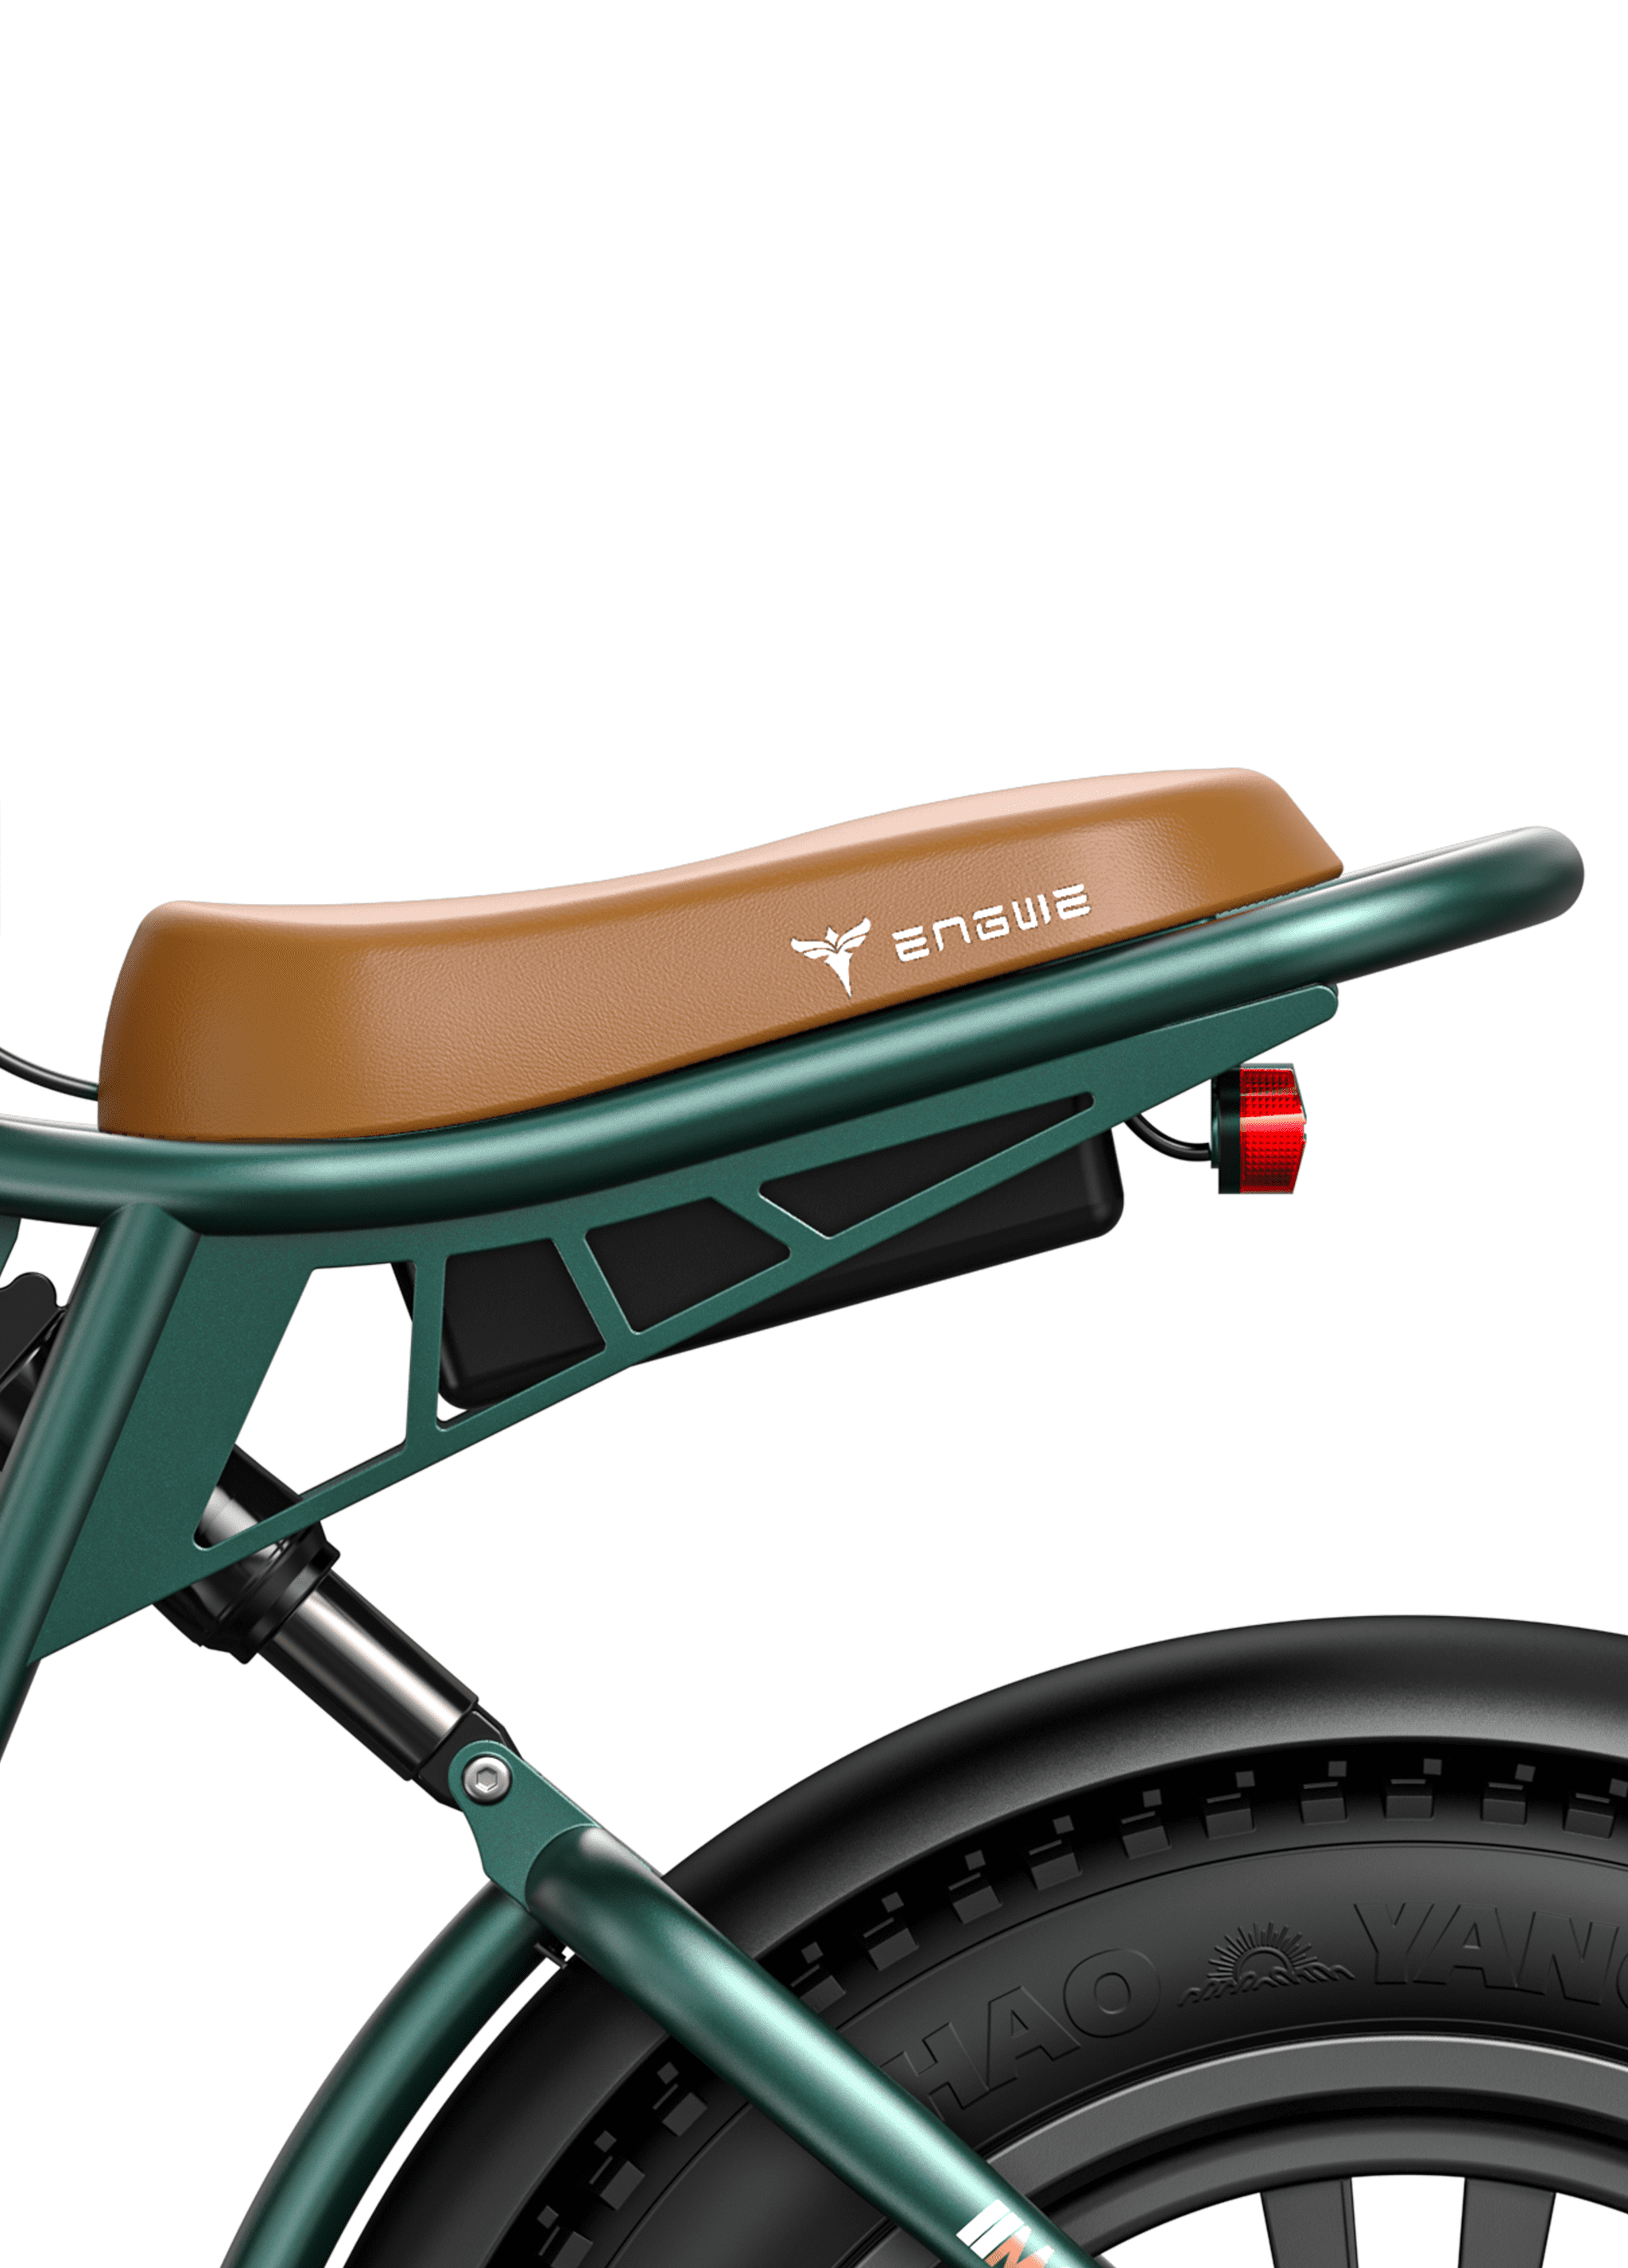 ENGWE M20 1000W (pico) 28 MPH Bicicleta eléctrica de largo alcance con suspensión dual